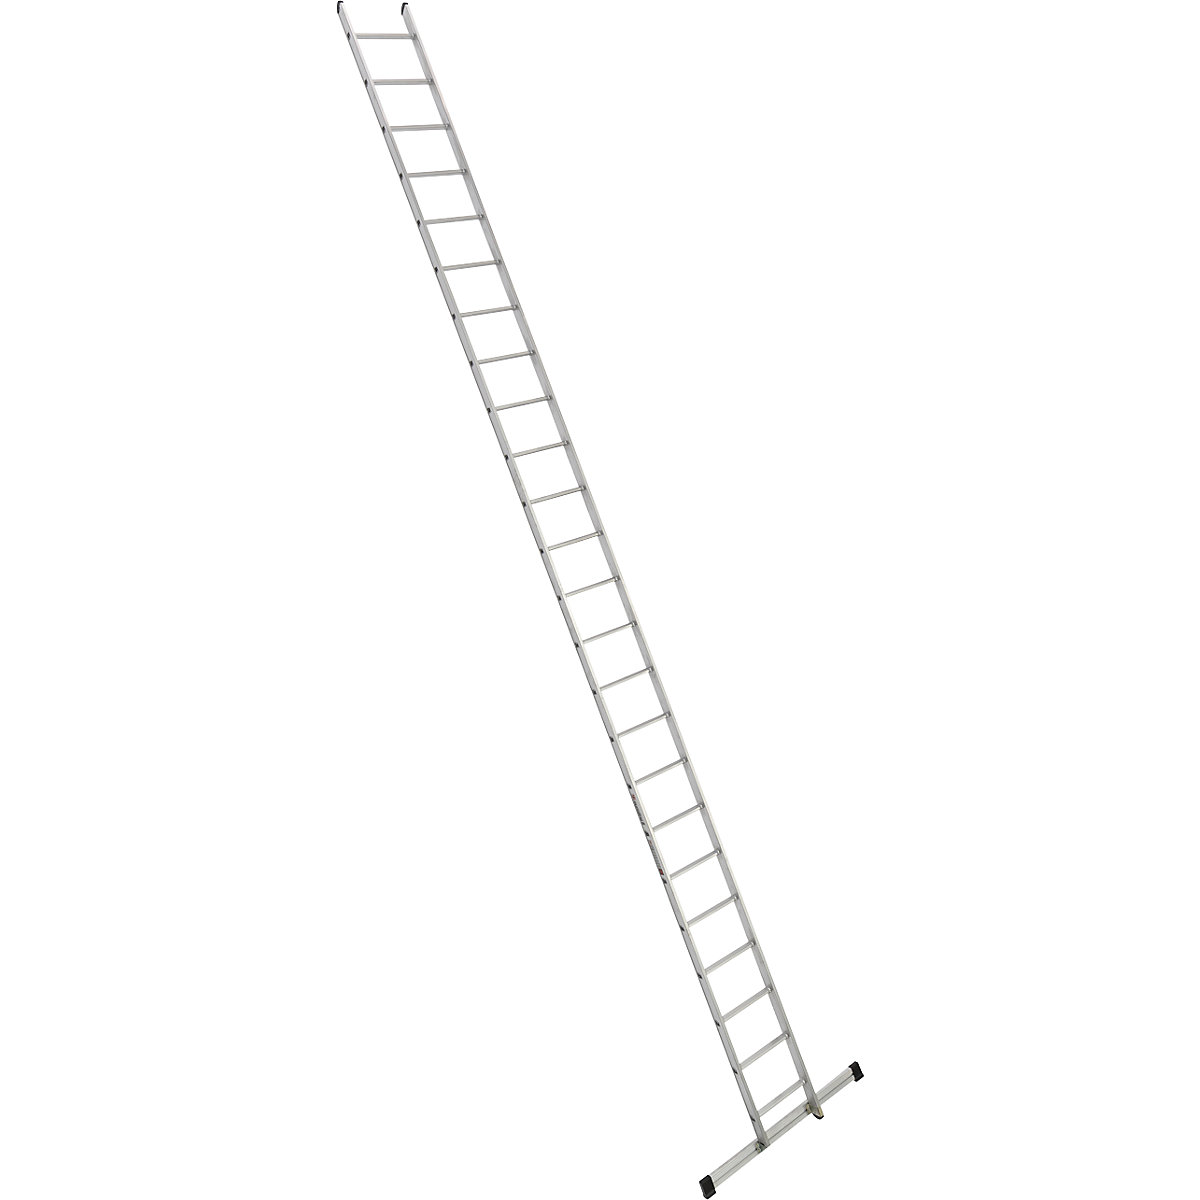 Escada de encosto – euroline, largura 410 mm, 24 degraus com travessa-7